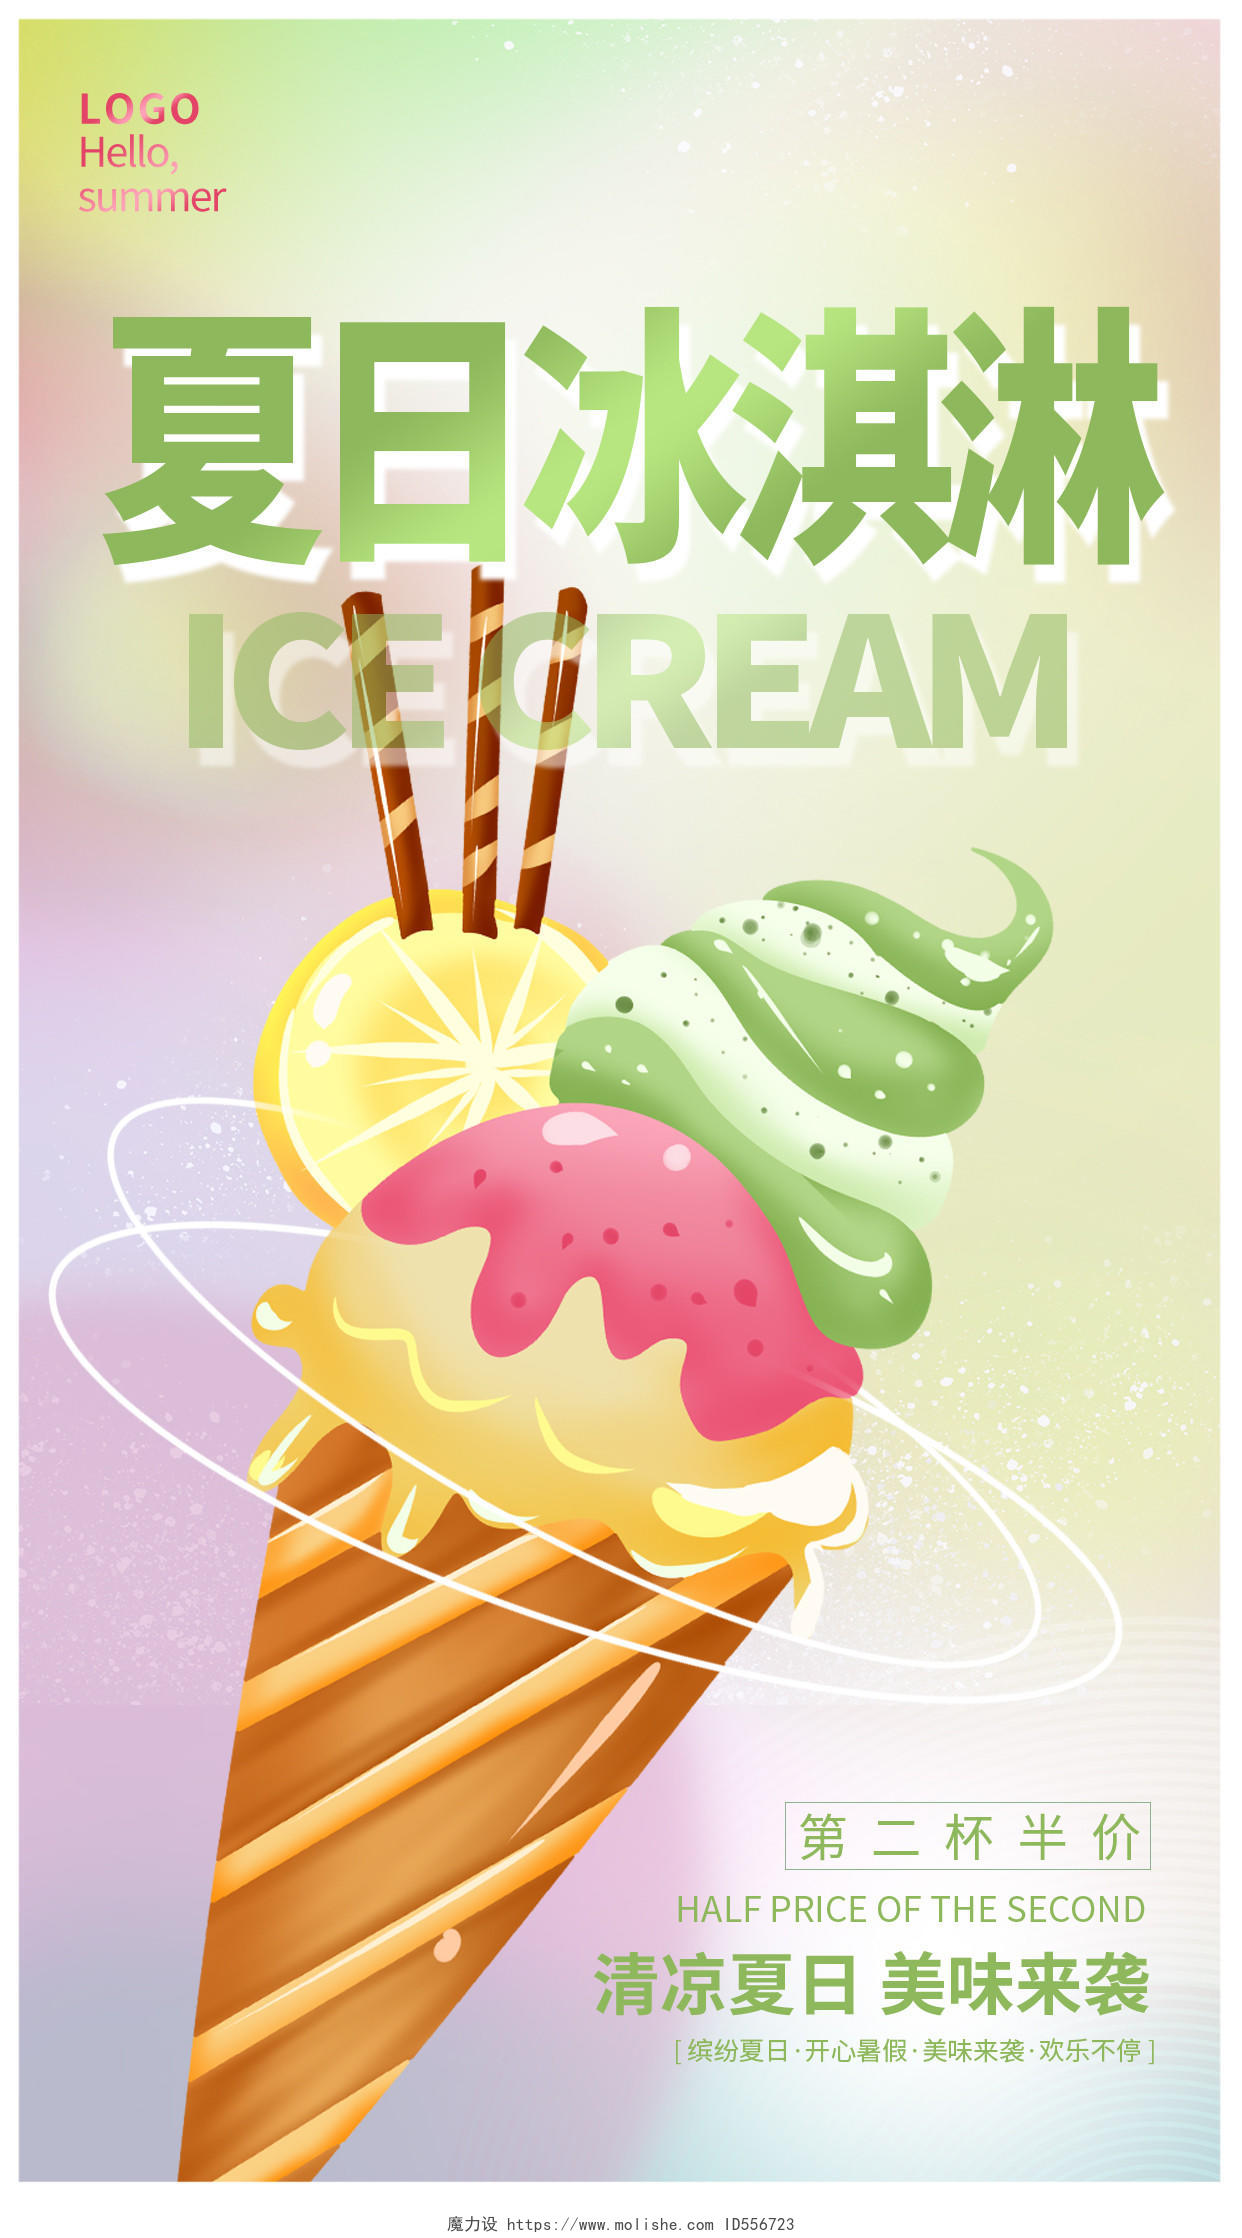 炫彩时尚夏日冰淇淋促销宣传手机海报设计夏天冰淇淋雪糕